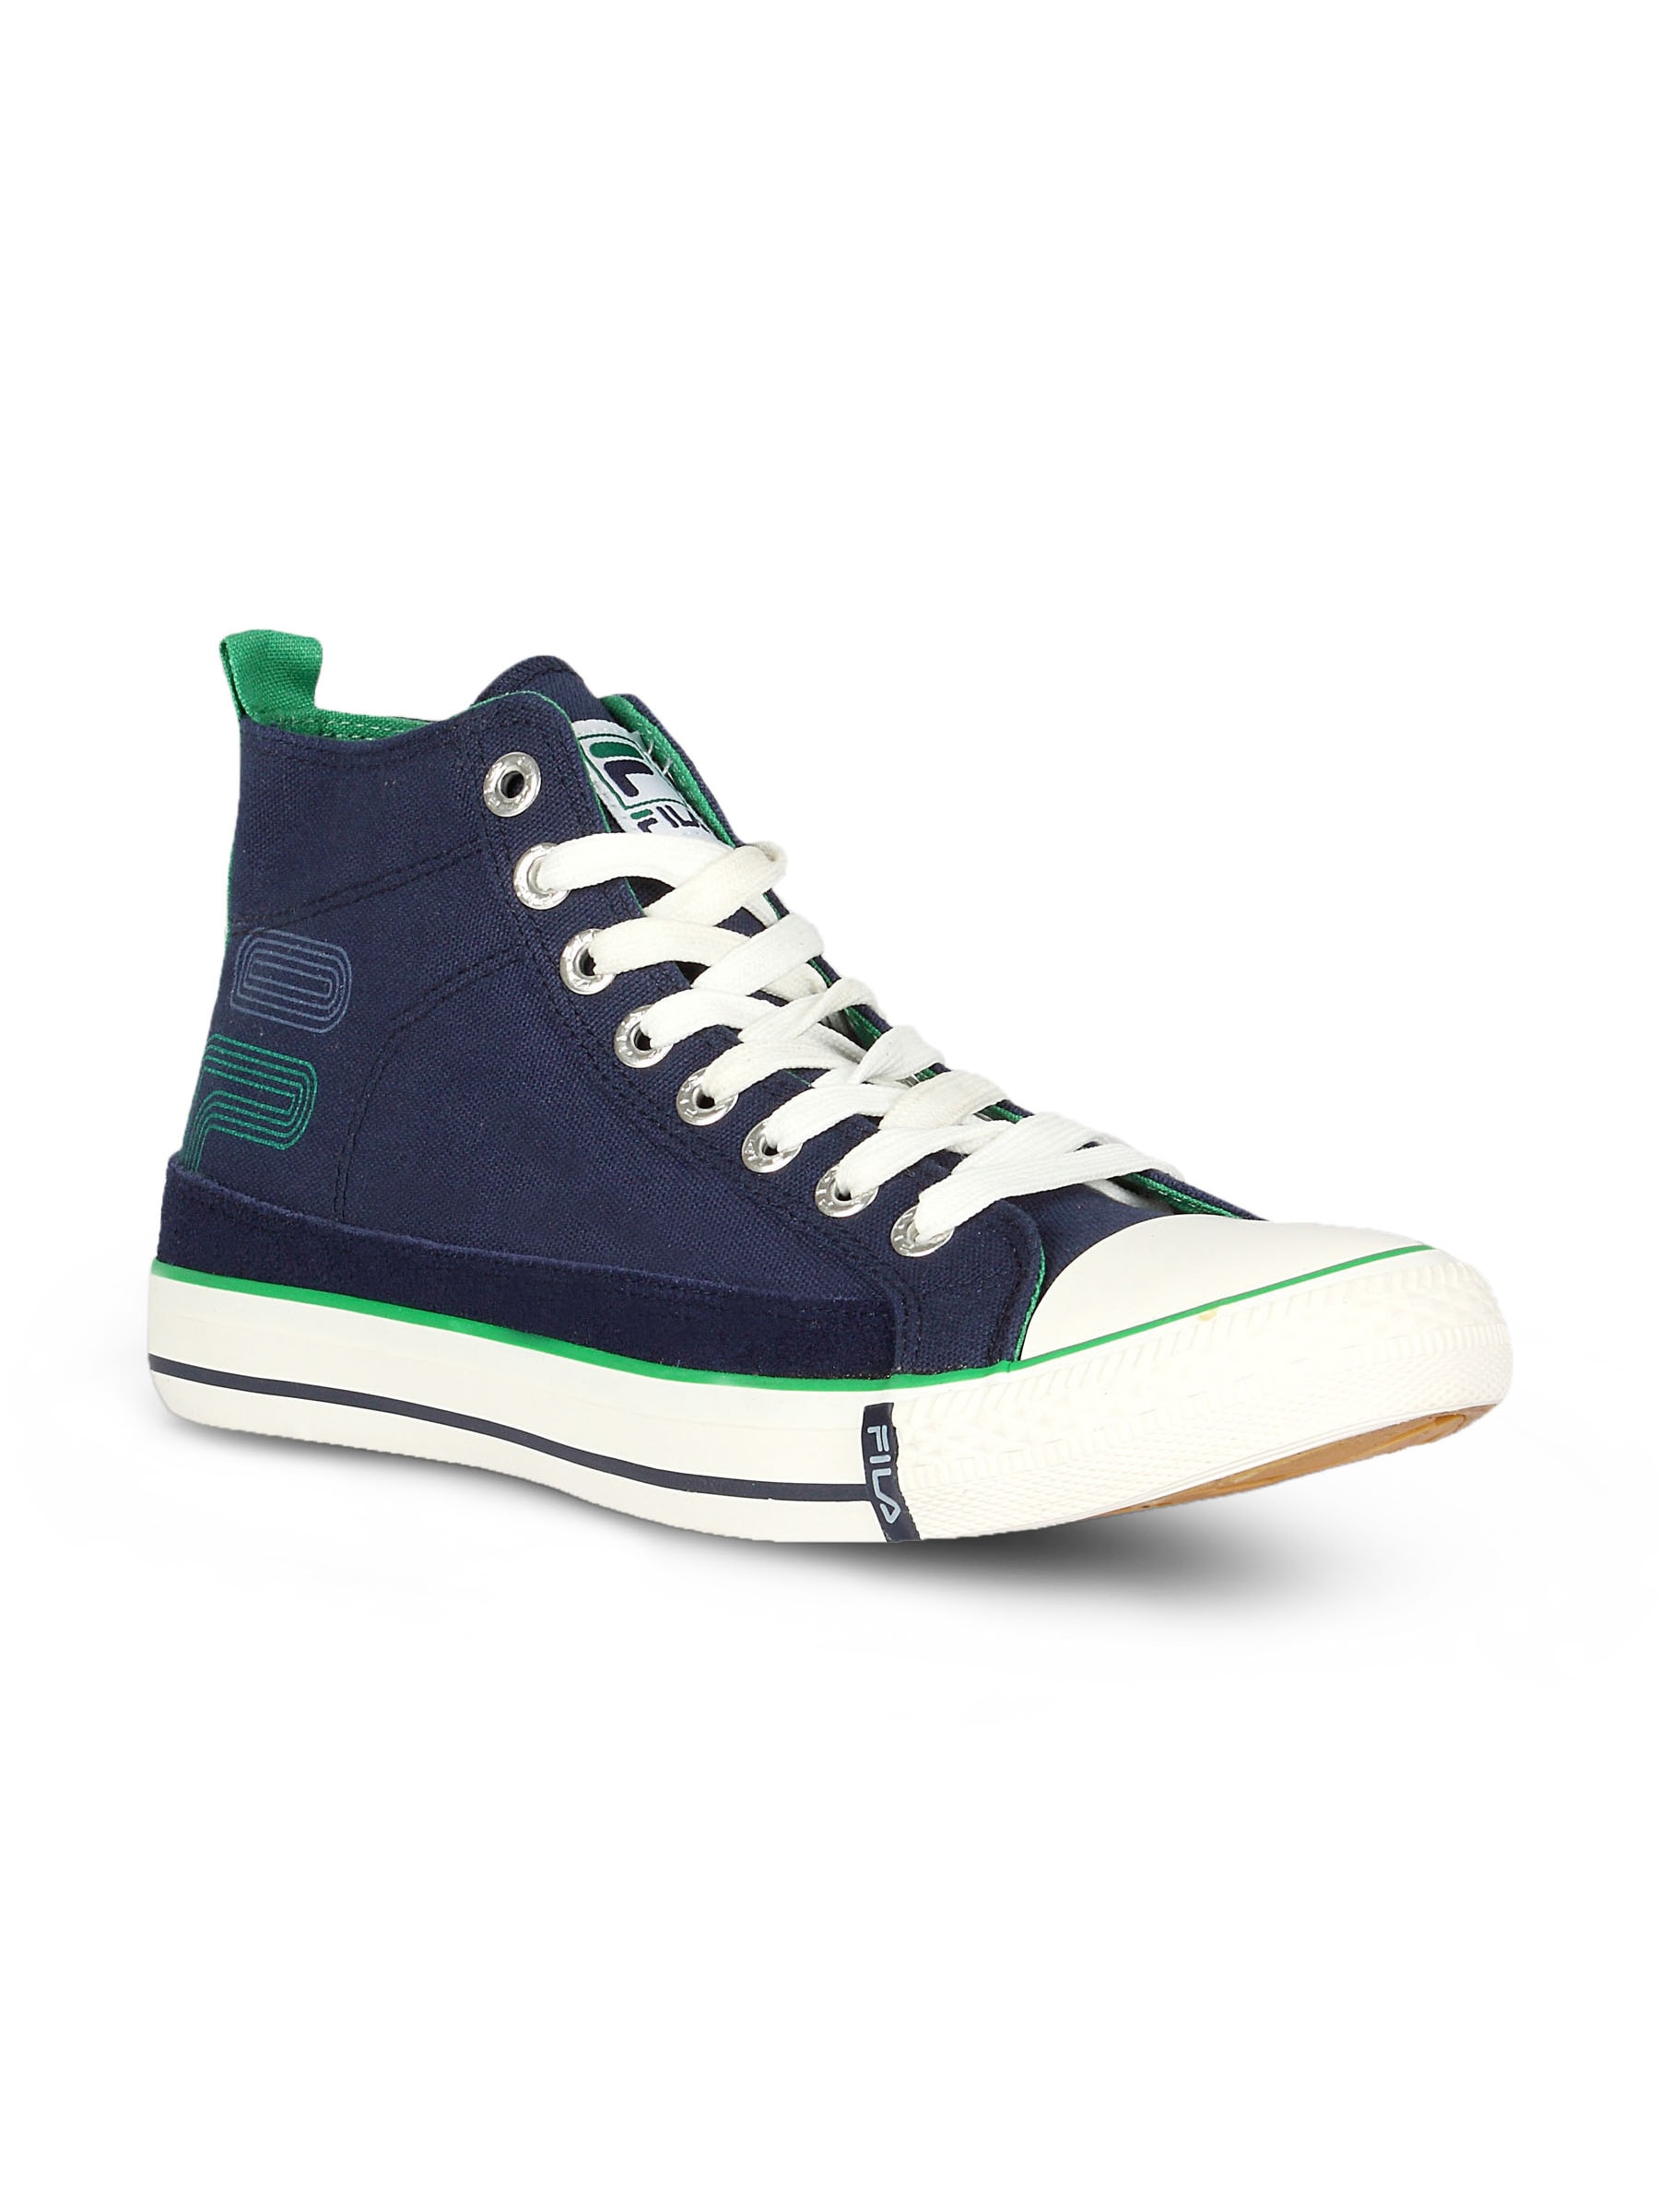 Fila Men's Maverick HI Navy Green Canvas Shoe